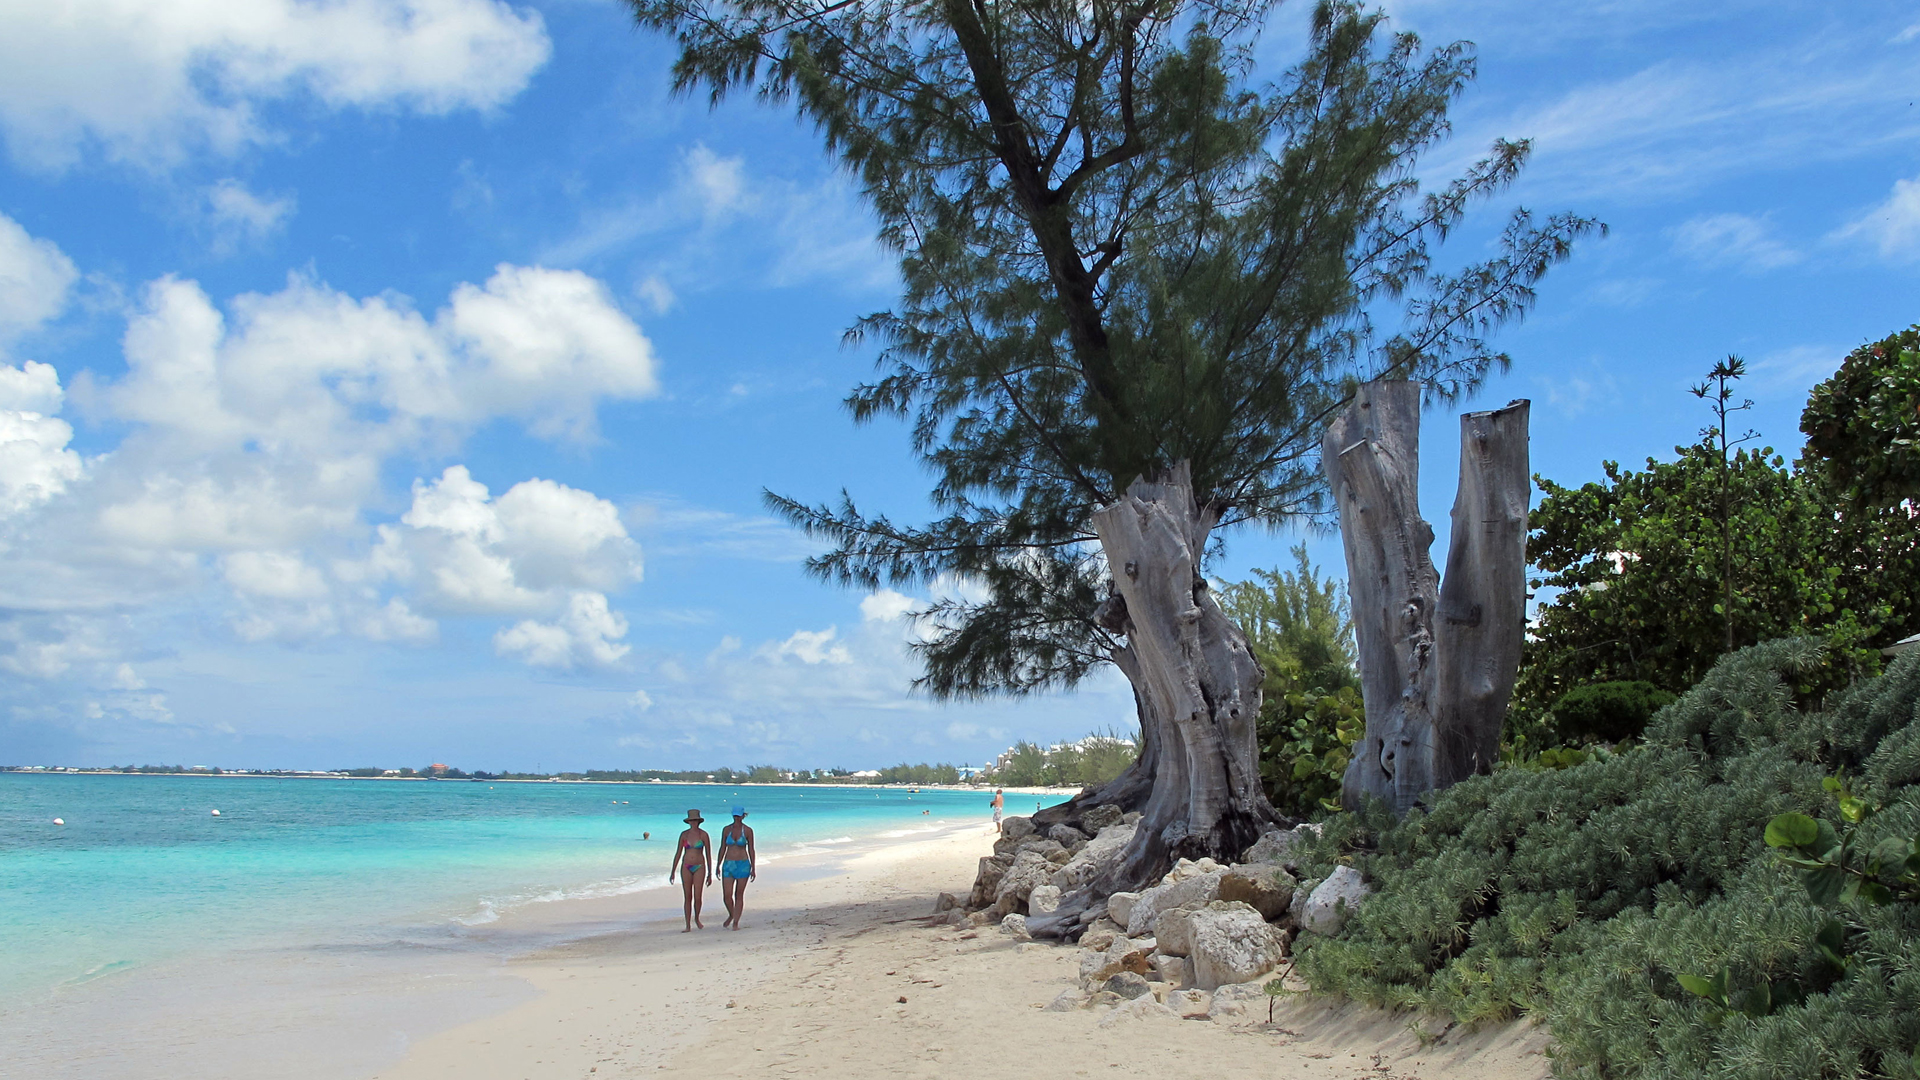 Strand auf der Großen Cayman-Insel | picture alliance / AP Photo